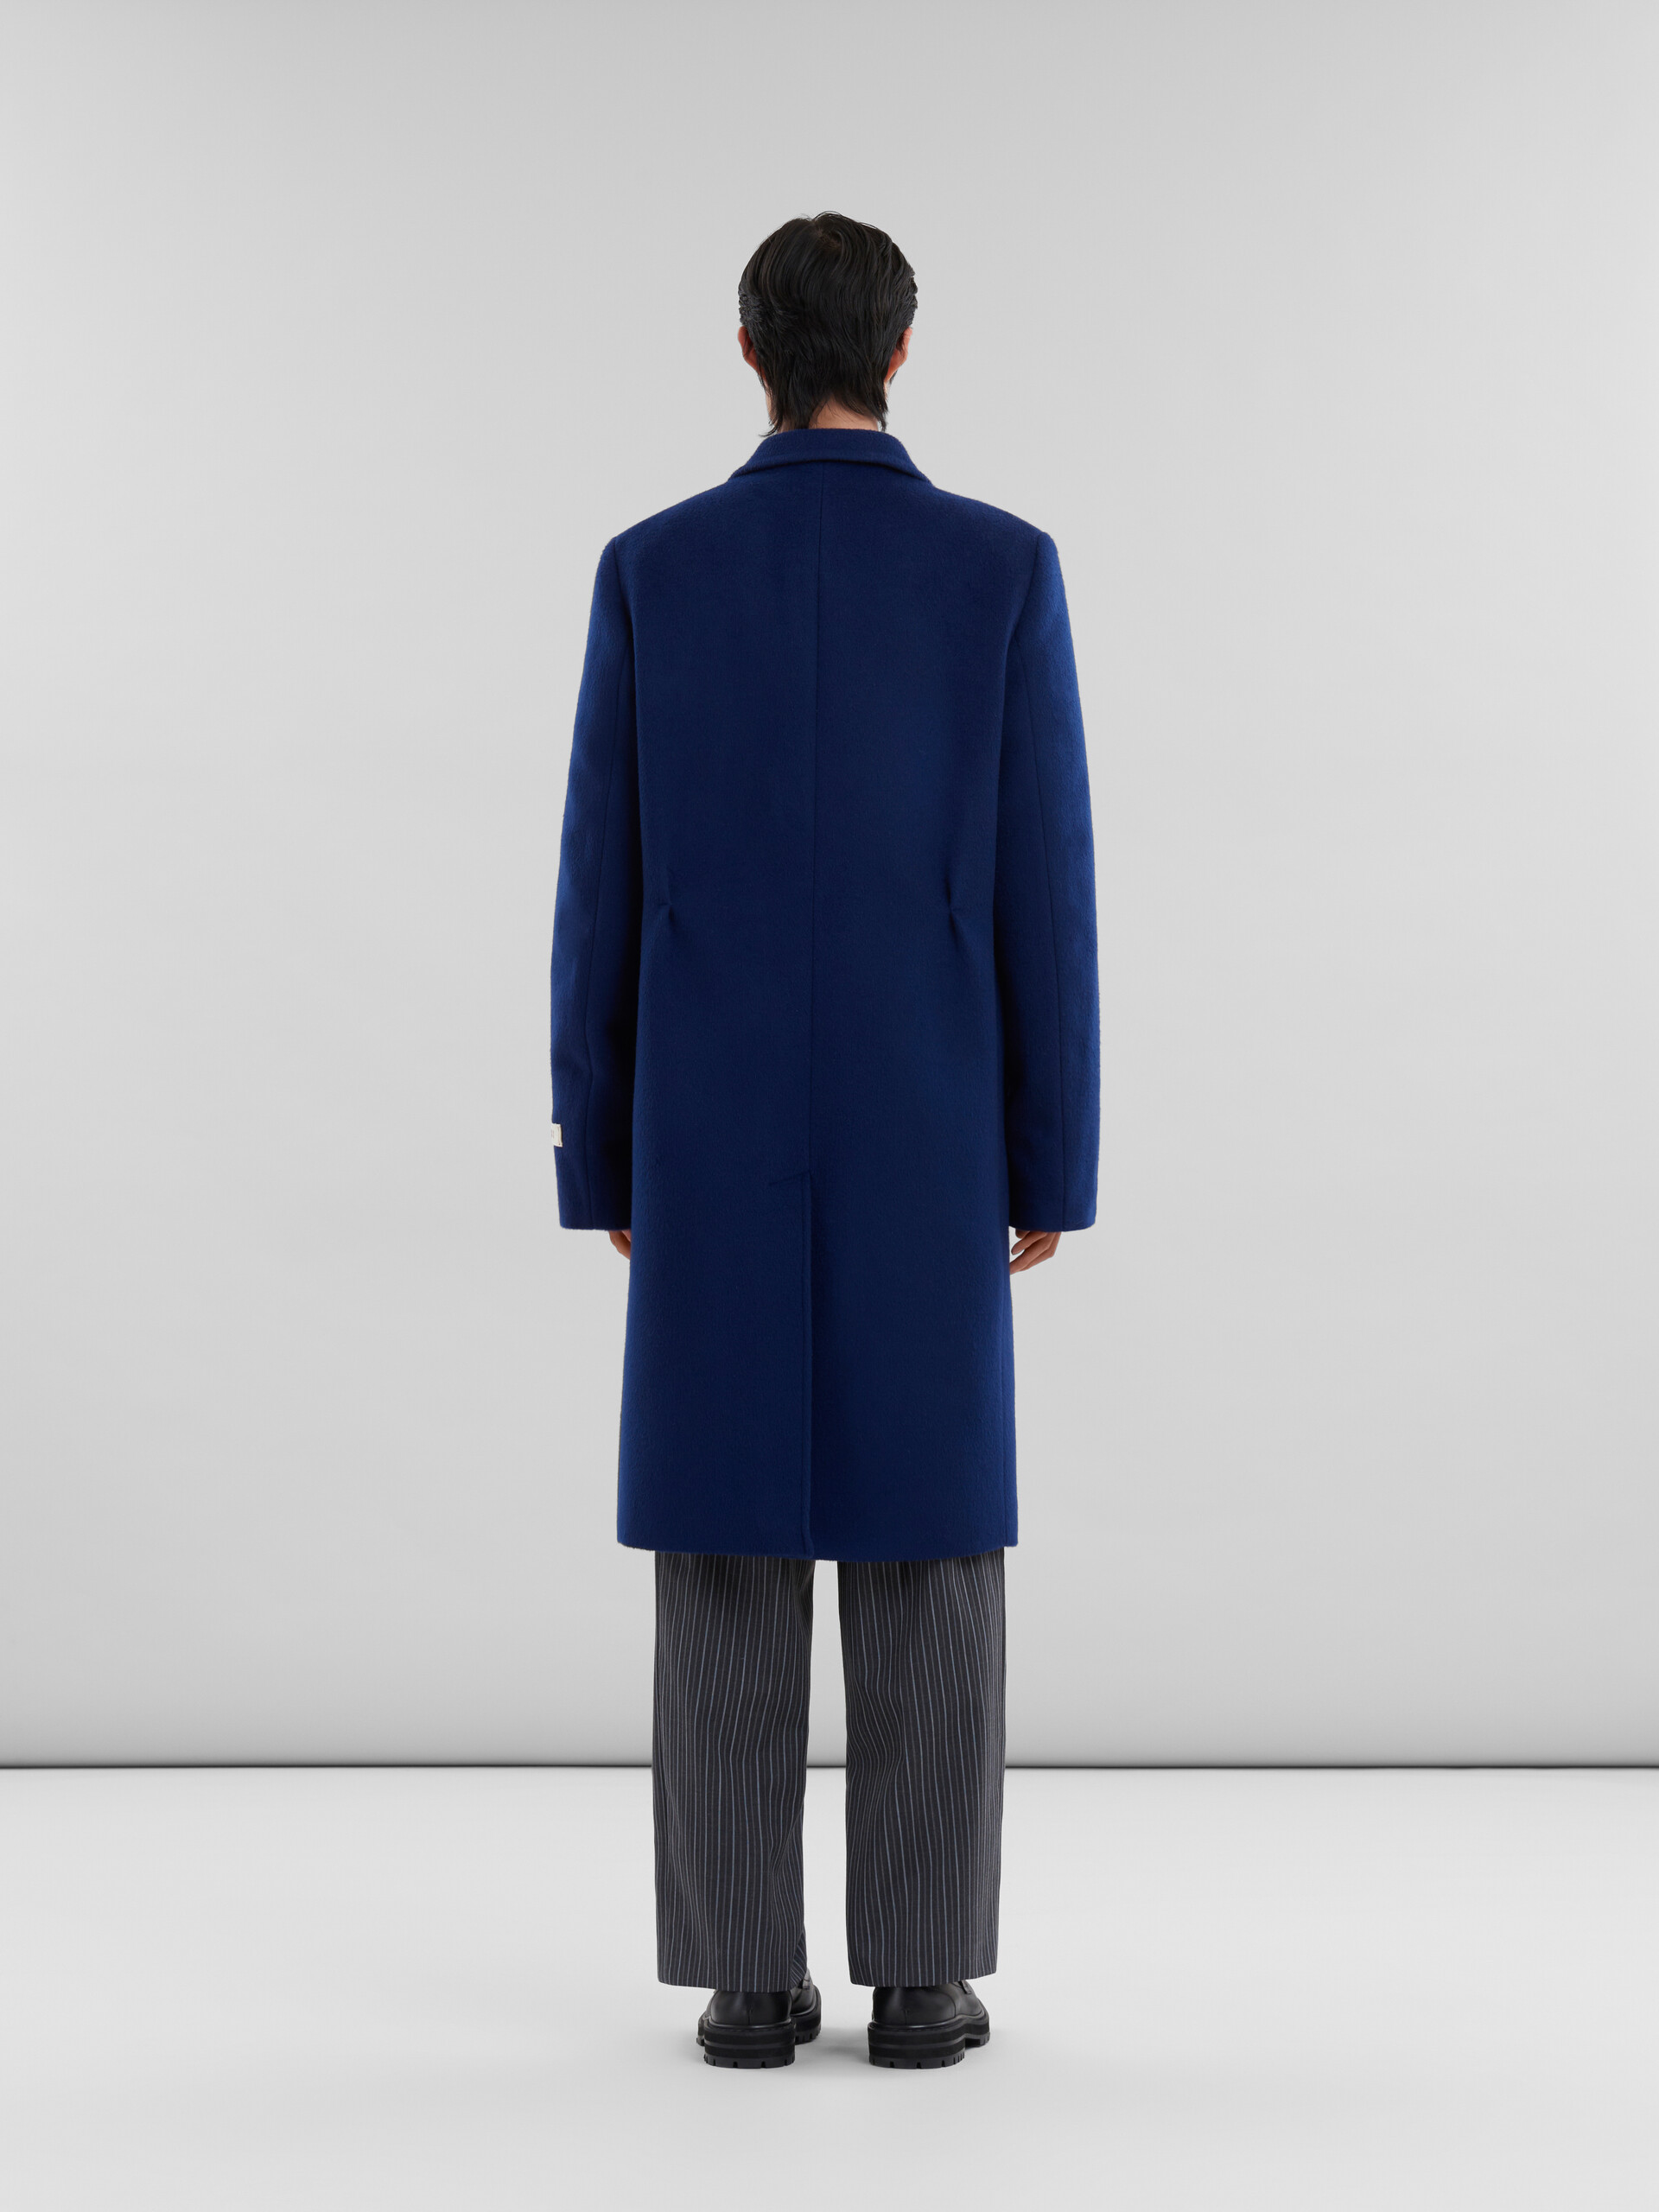 Manteau à double boutonnage en feutre bleu avec effet raccommodé Marni - Vestes - Image 3